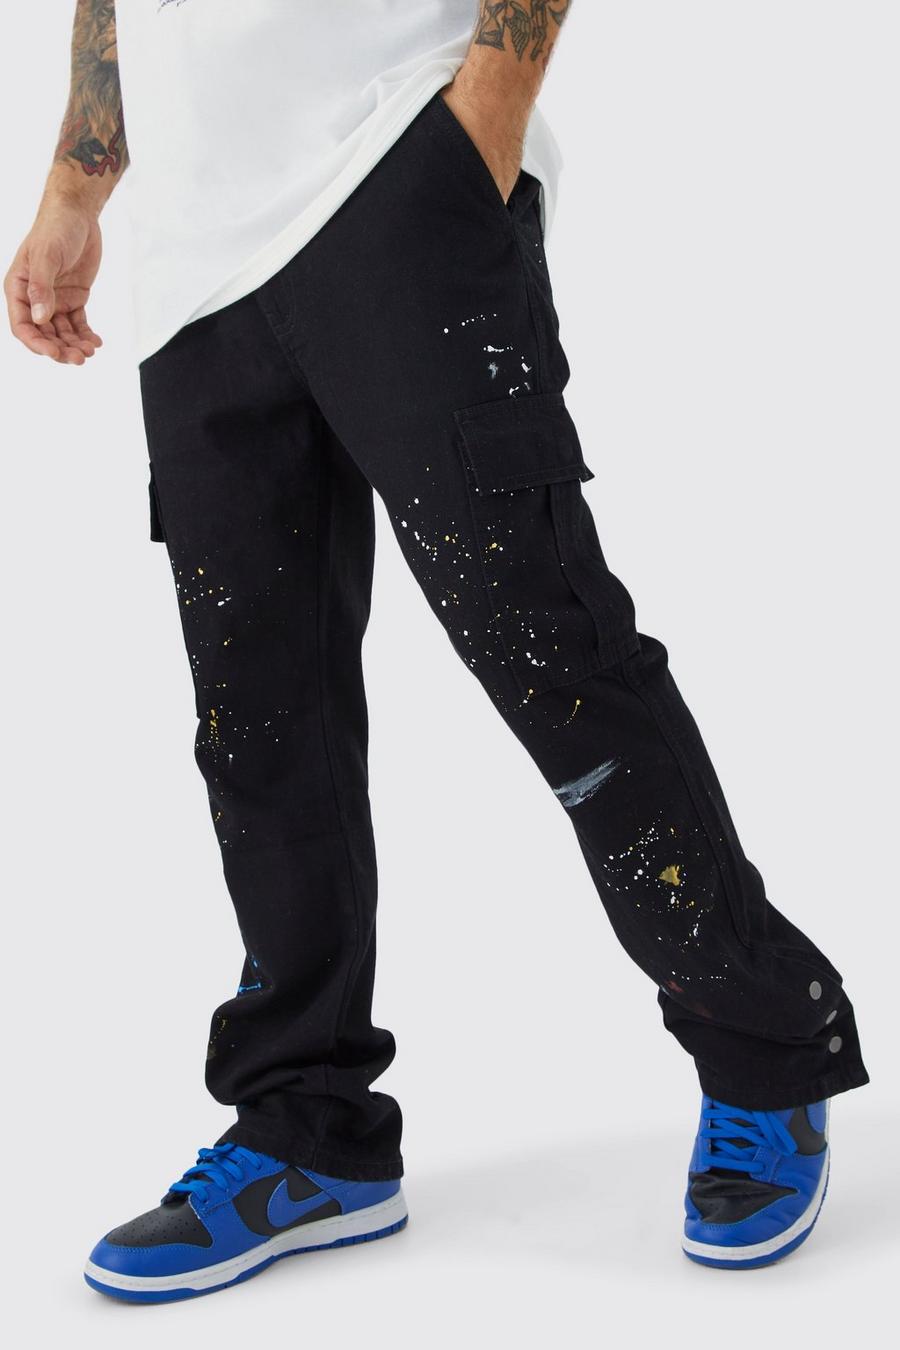 Pantaloni Cargo Slim Fit a zampa con bottoni a pressione sul fondo e schizzi di colore, Black